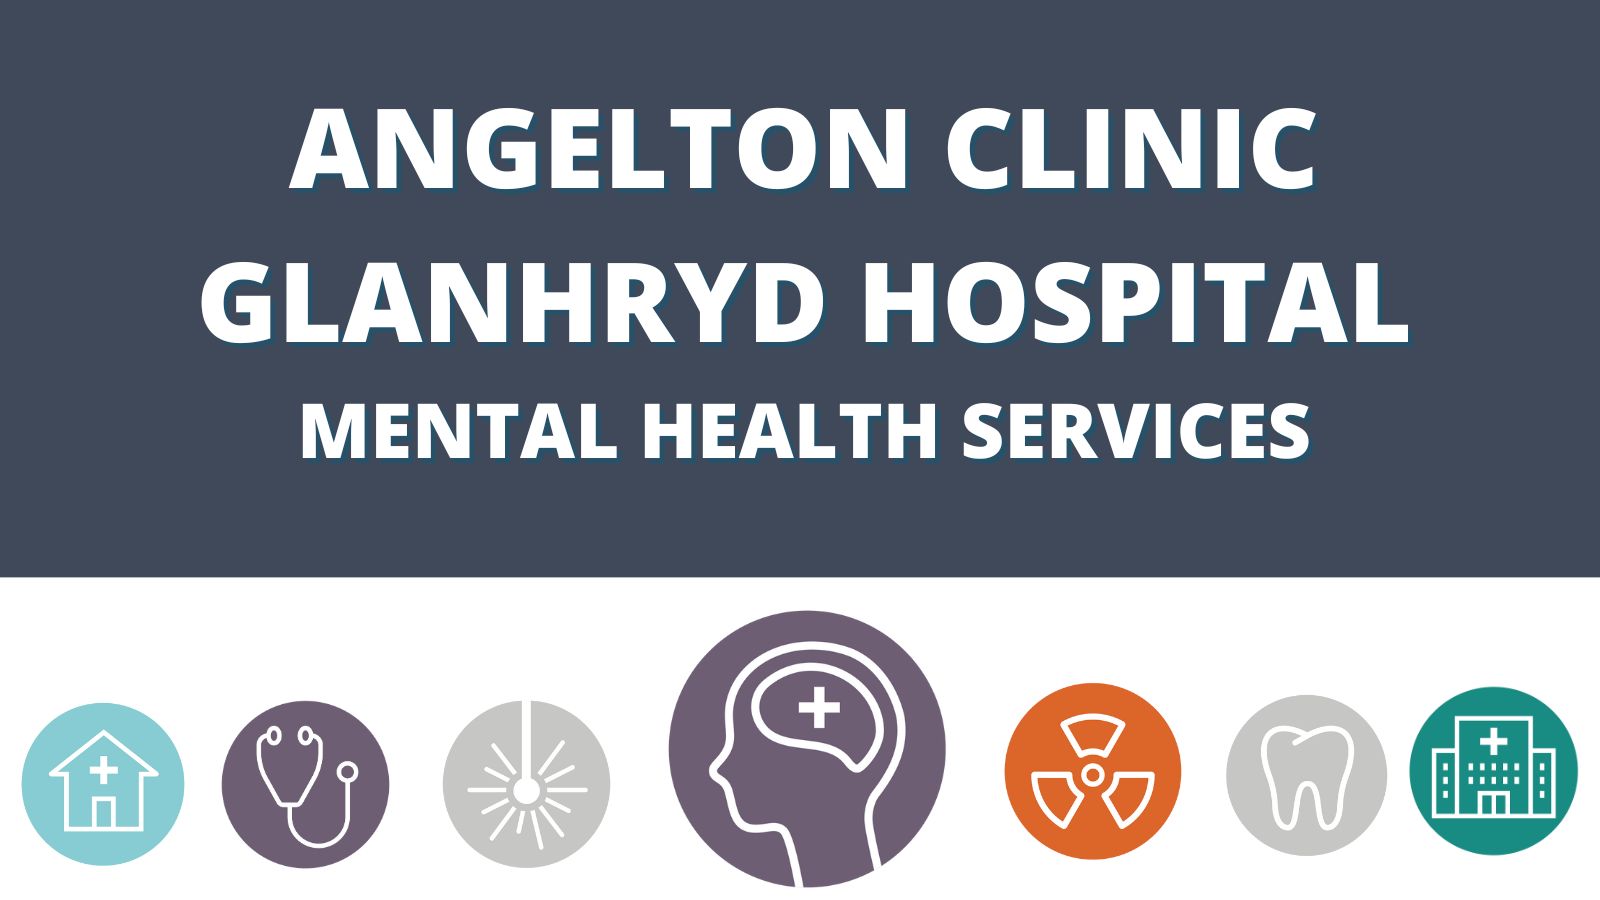 Angelton Clinic Glanhryd Hospital Mental Health Services